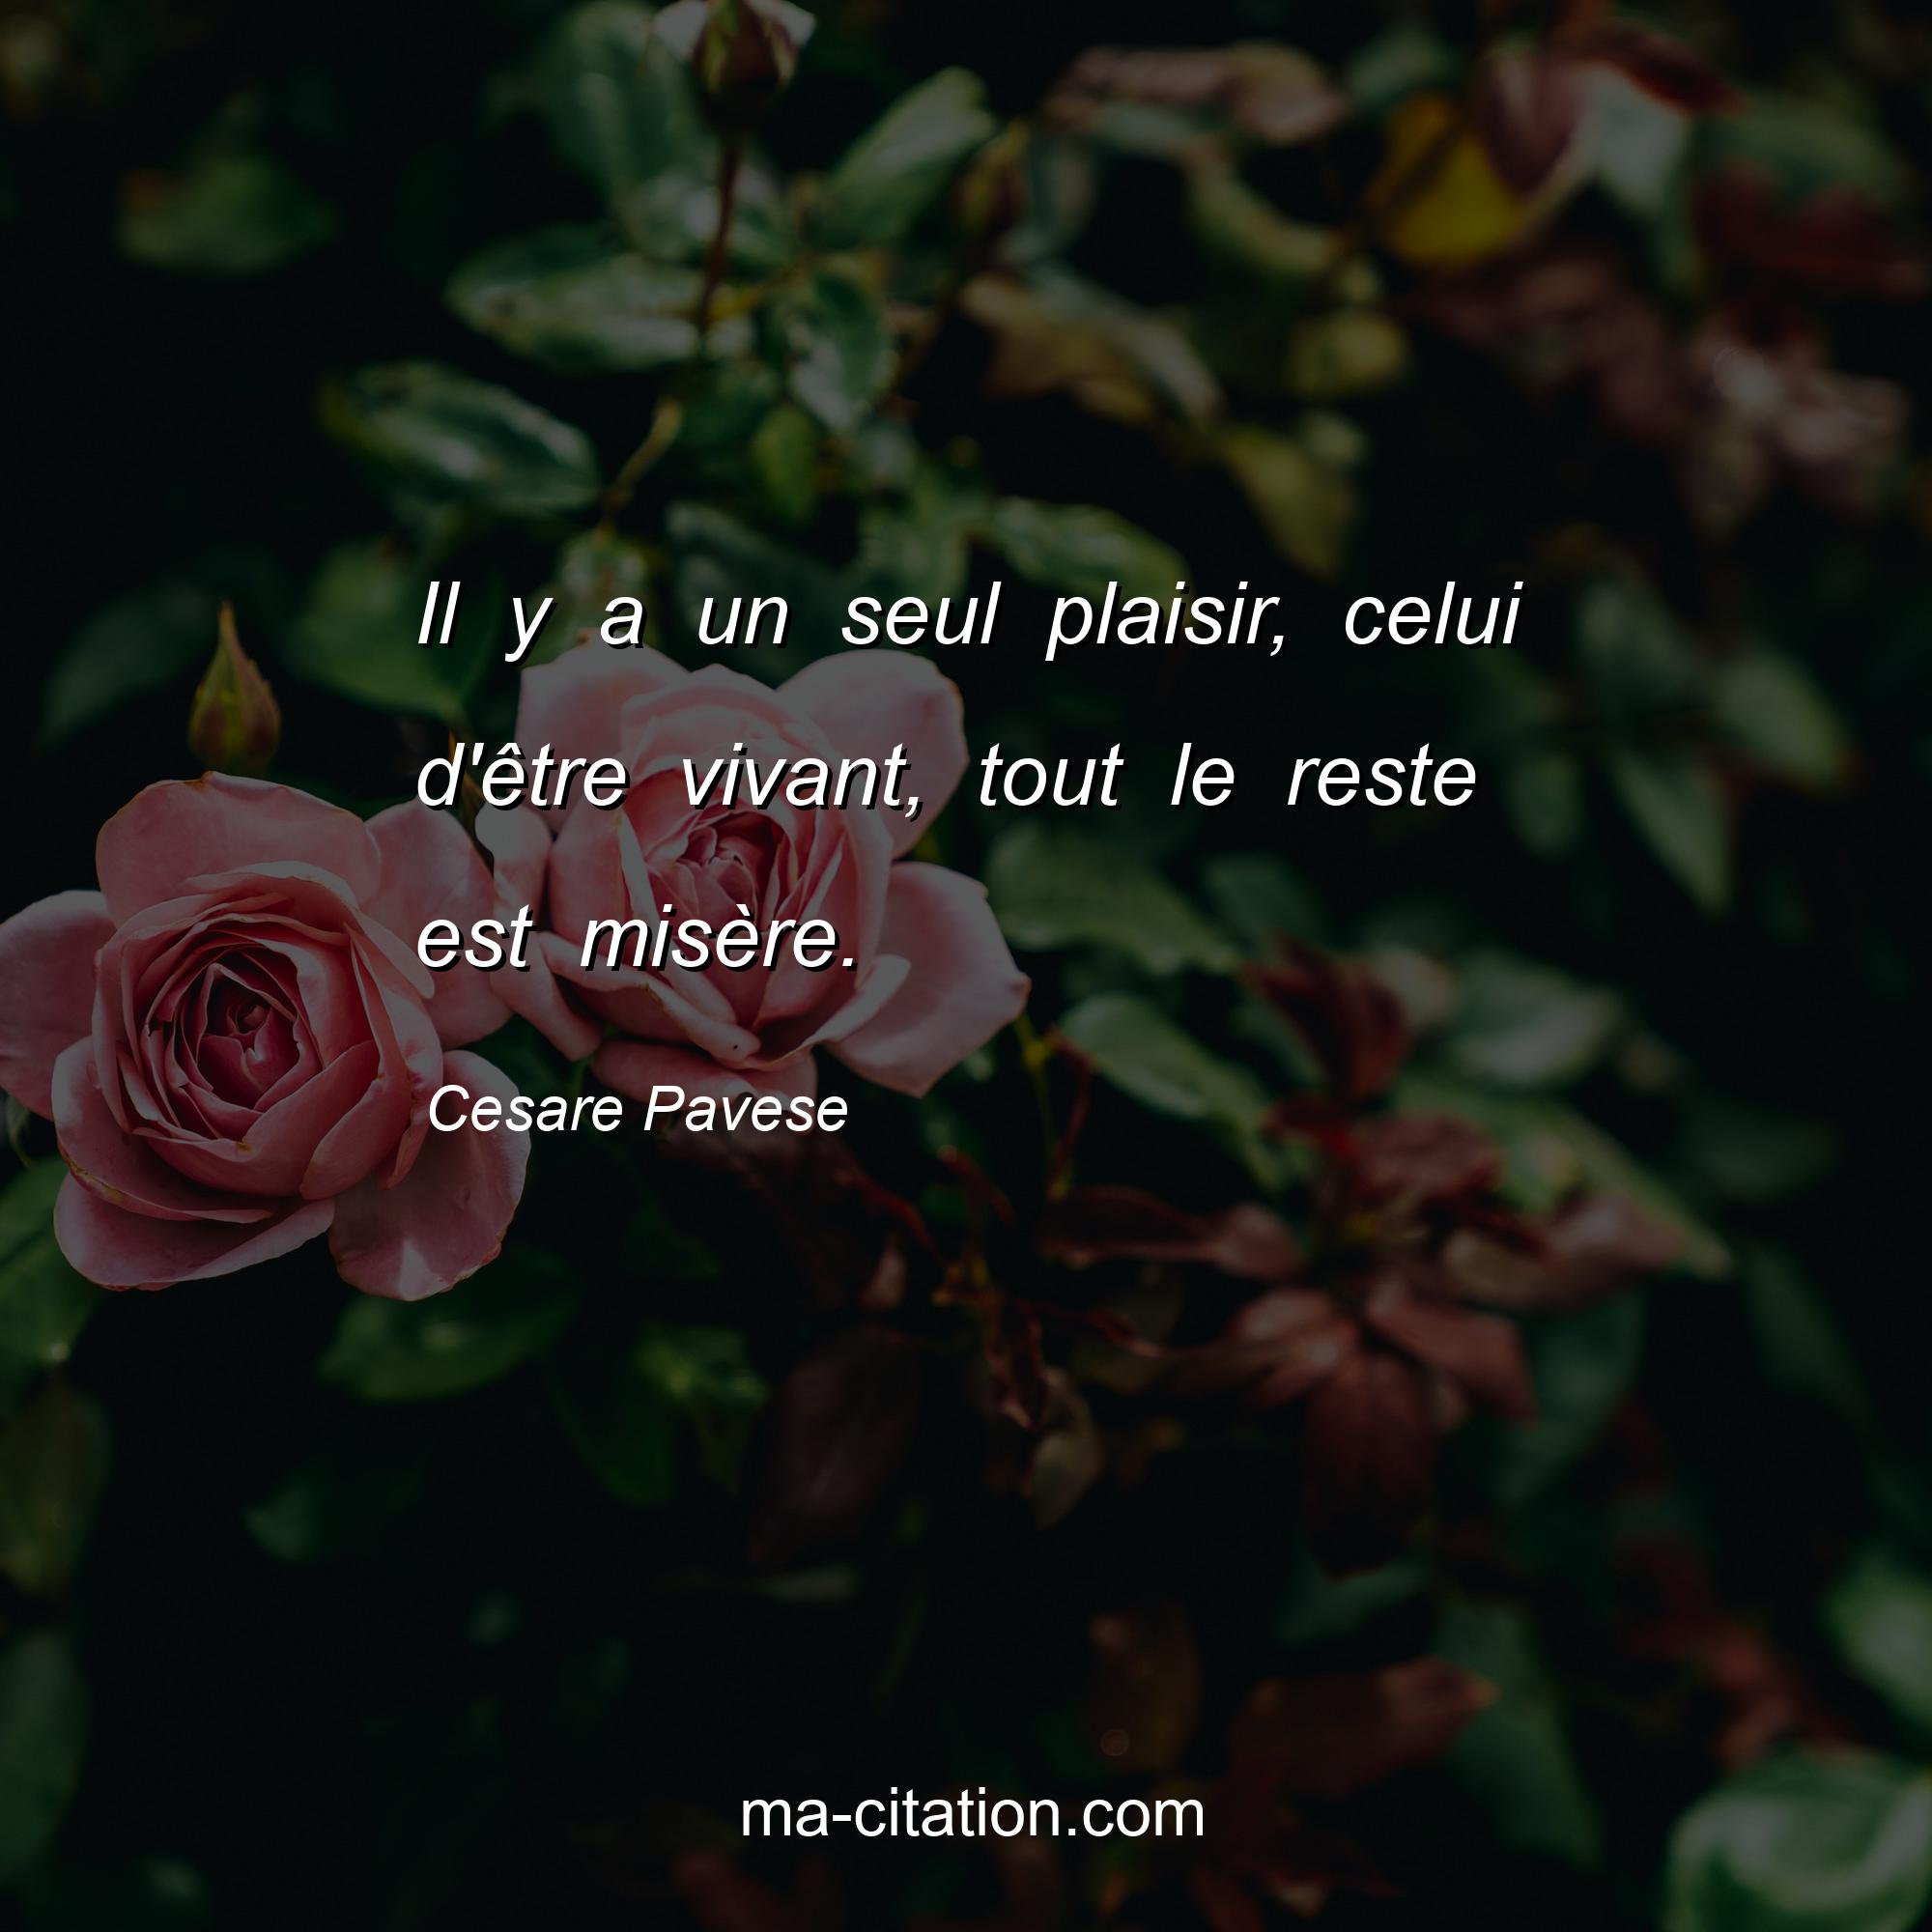 Cesare Pavese : Il y a un seul plaisir, celui d'être vivant, tout le reste est misère.